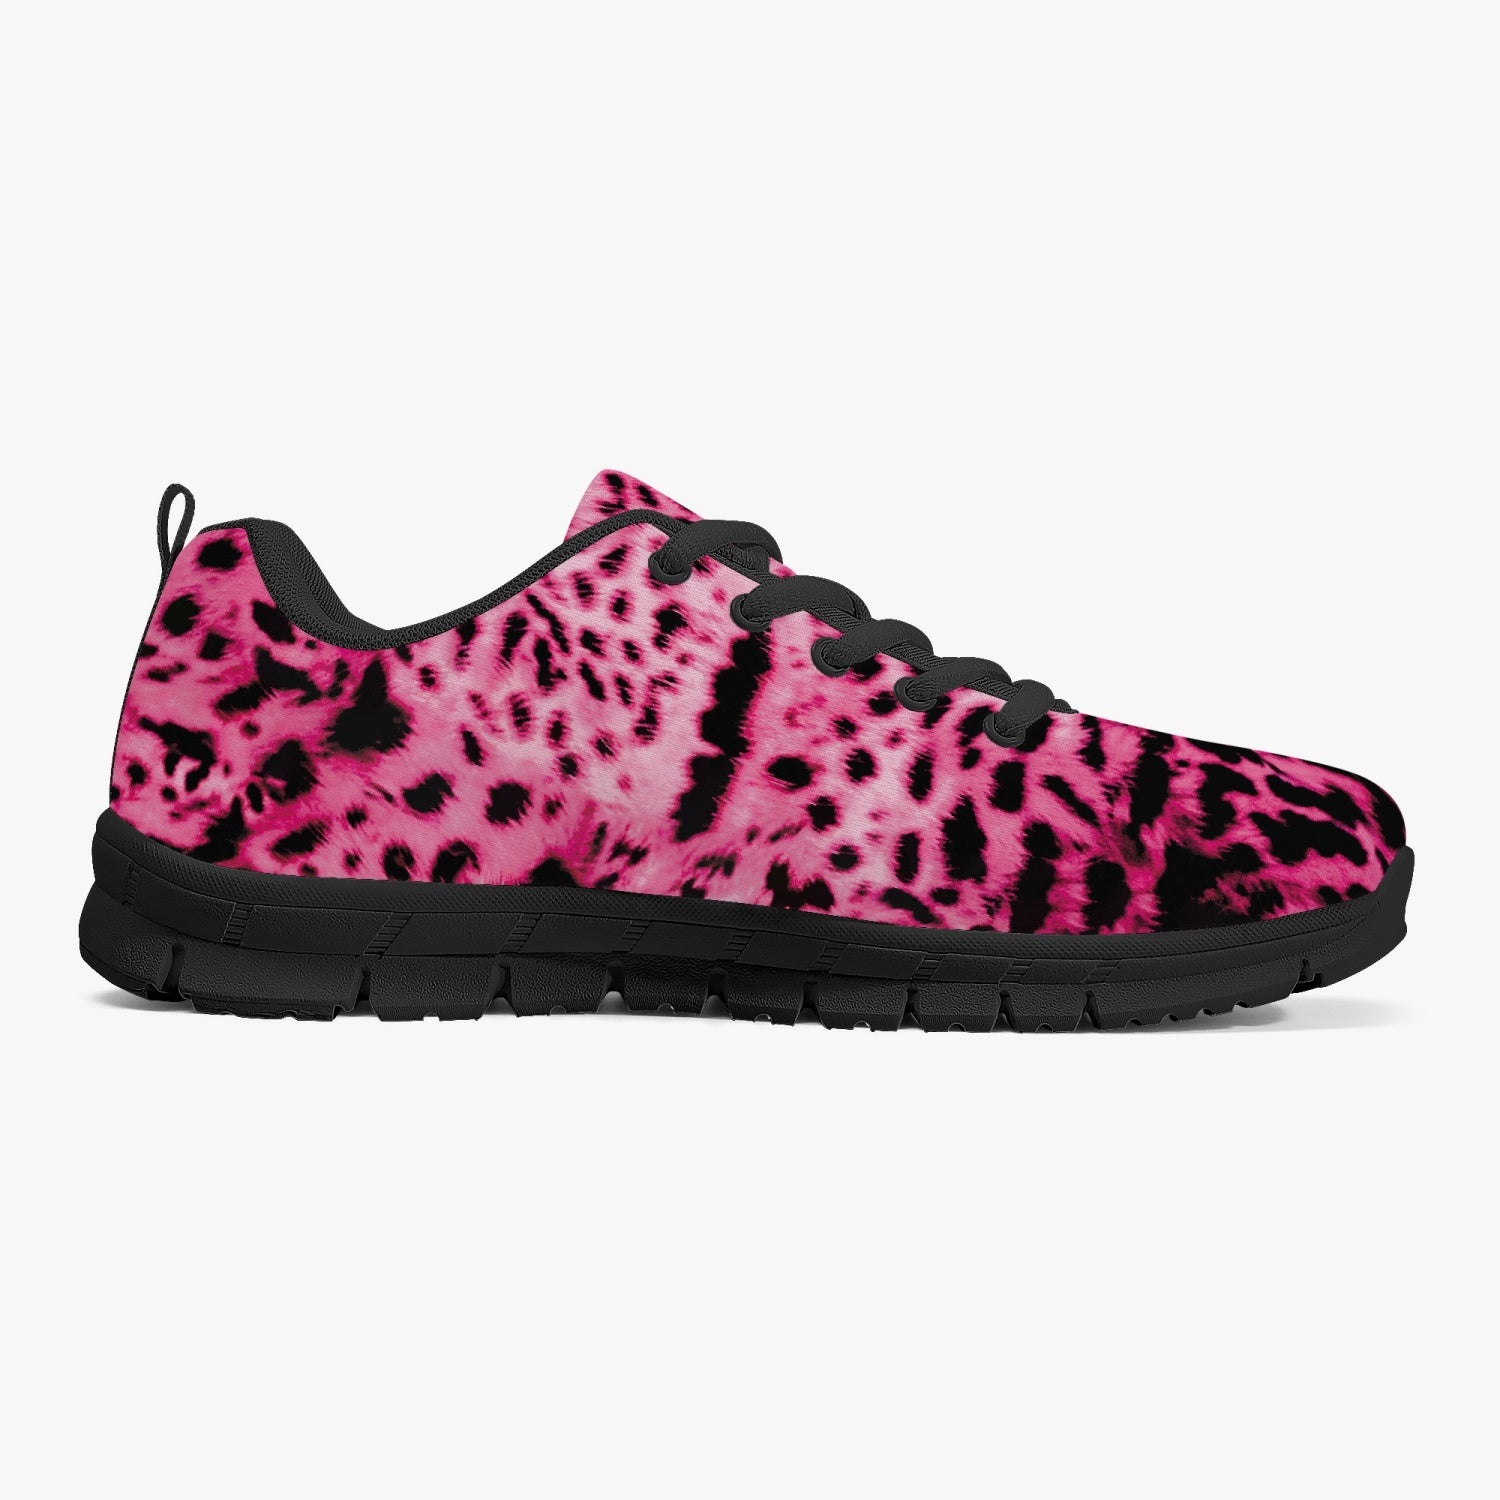 Big Cat Pink Cheetah Sneakers